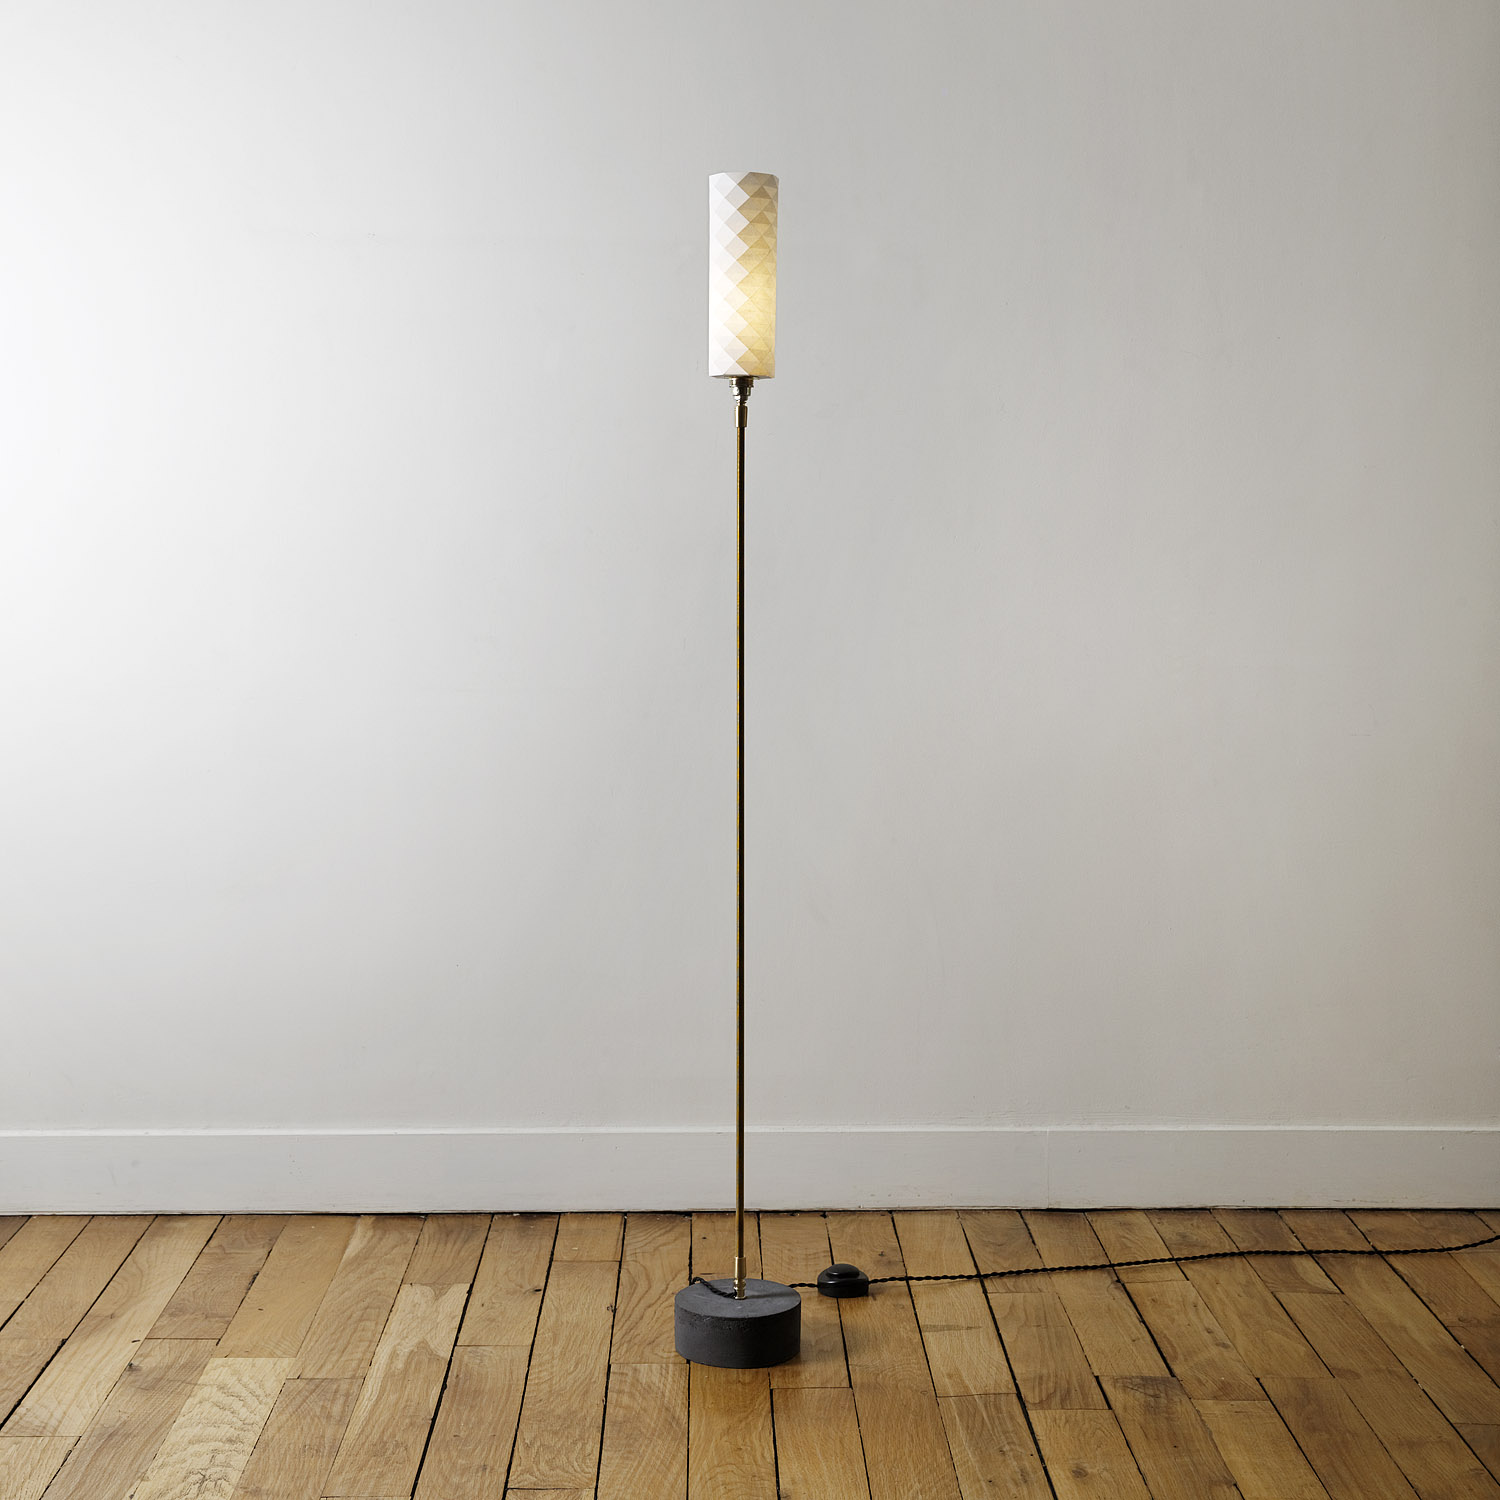 Lampe en bois flotté sur pied béton - création unique.